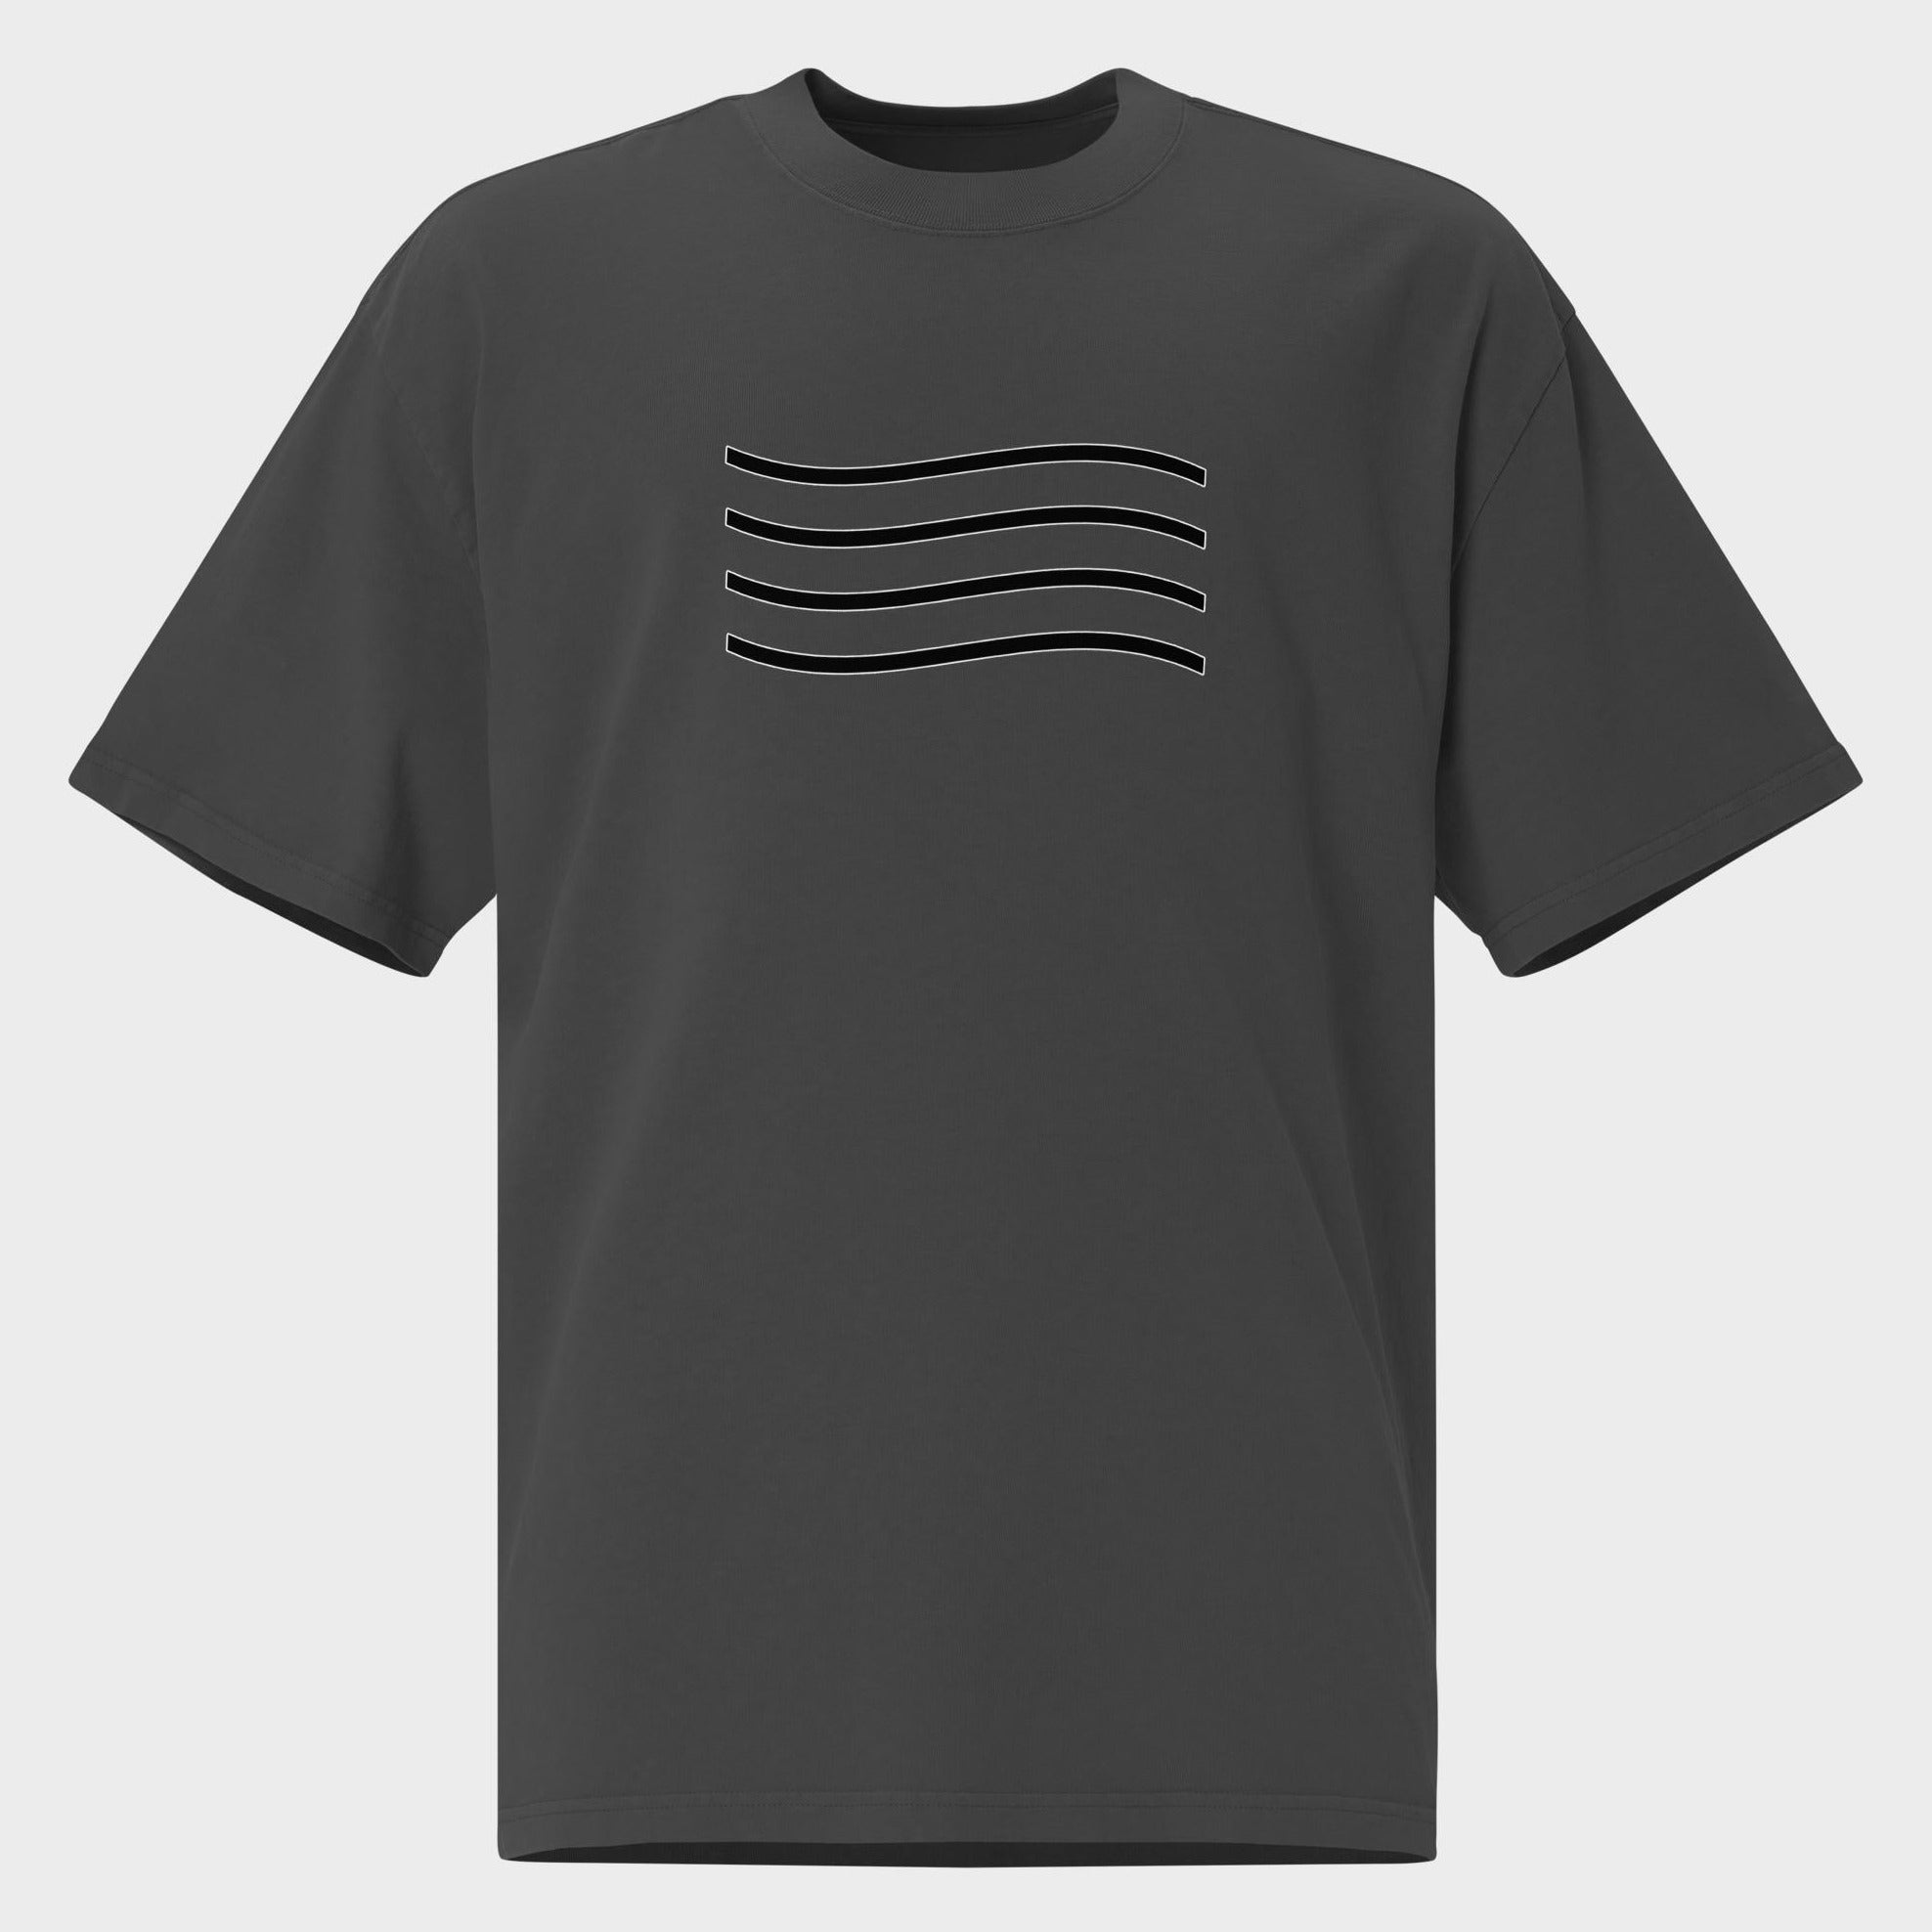 Waves - Oversized T-Shirt